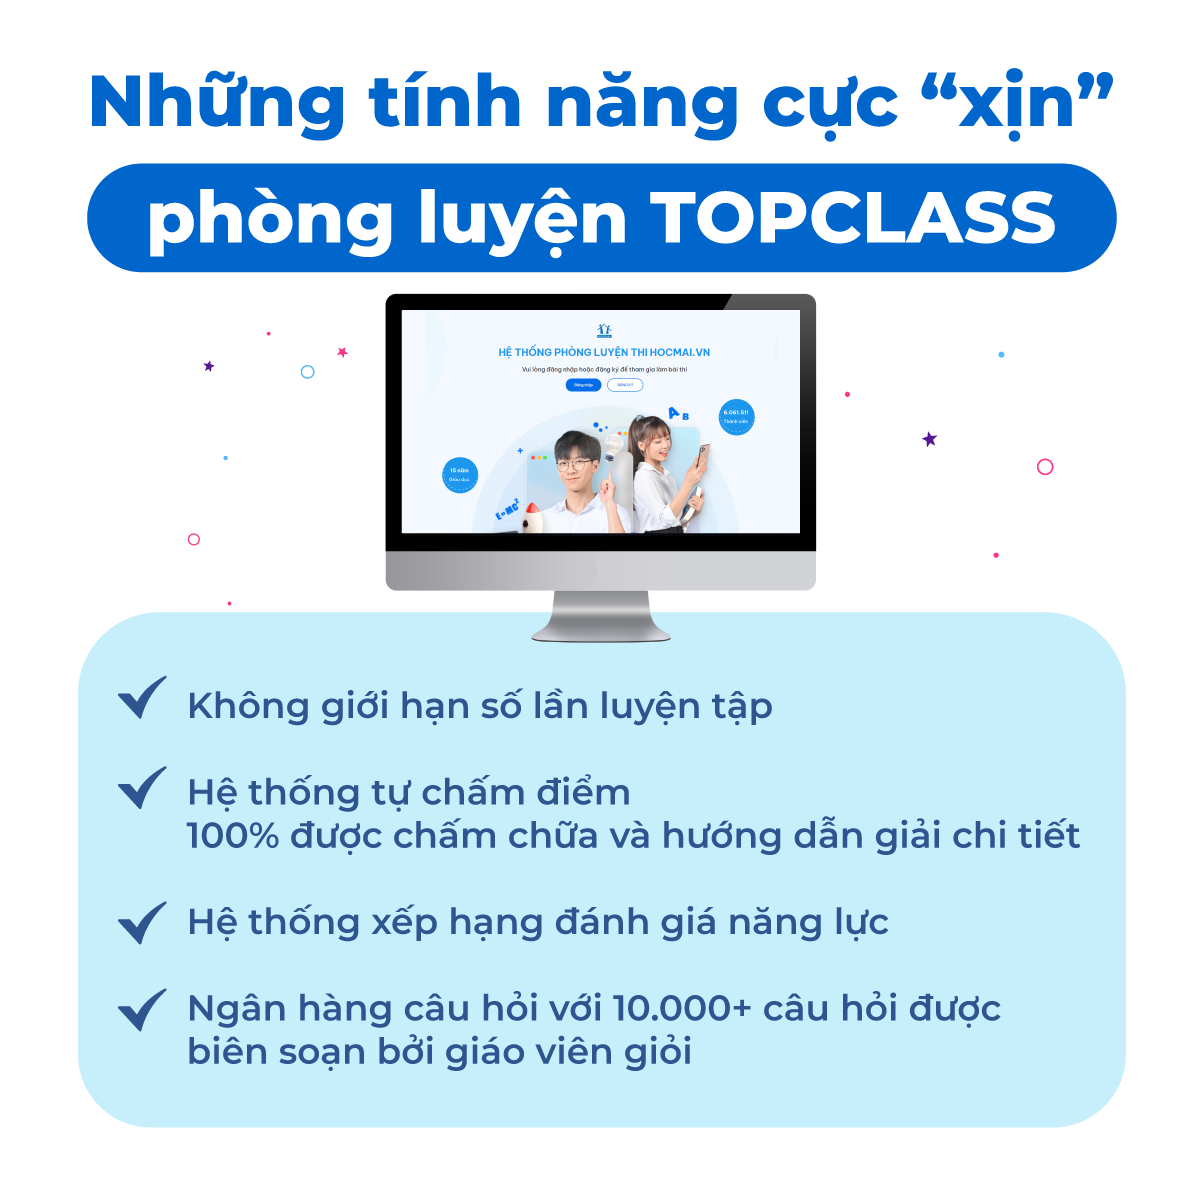 HOCMAI - Phòng luyện TOPCLASS môn Toán, Tiếng Việt/ Ngữ Văn từ lớp 4 đến lớp 11 - Gói 12 tháng- Toàn quốc [Voucher]